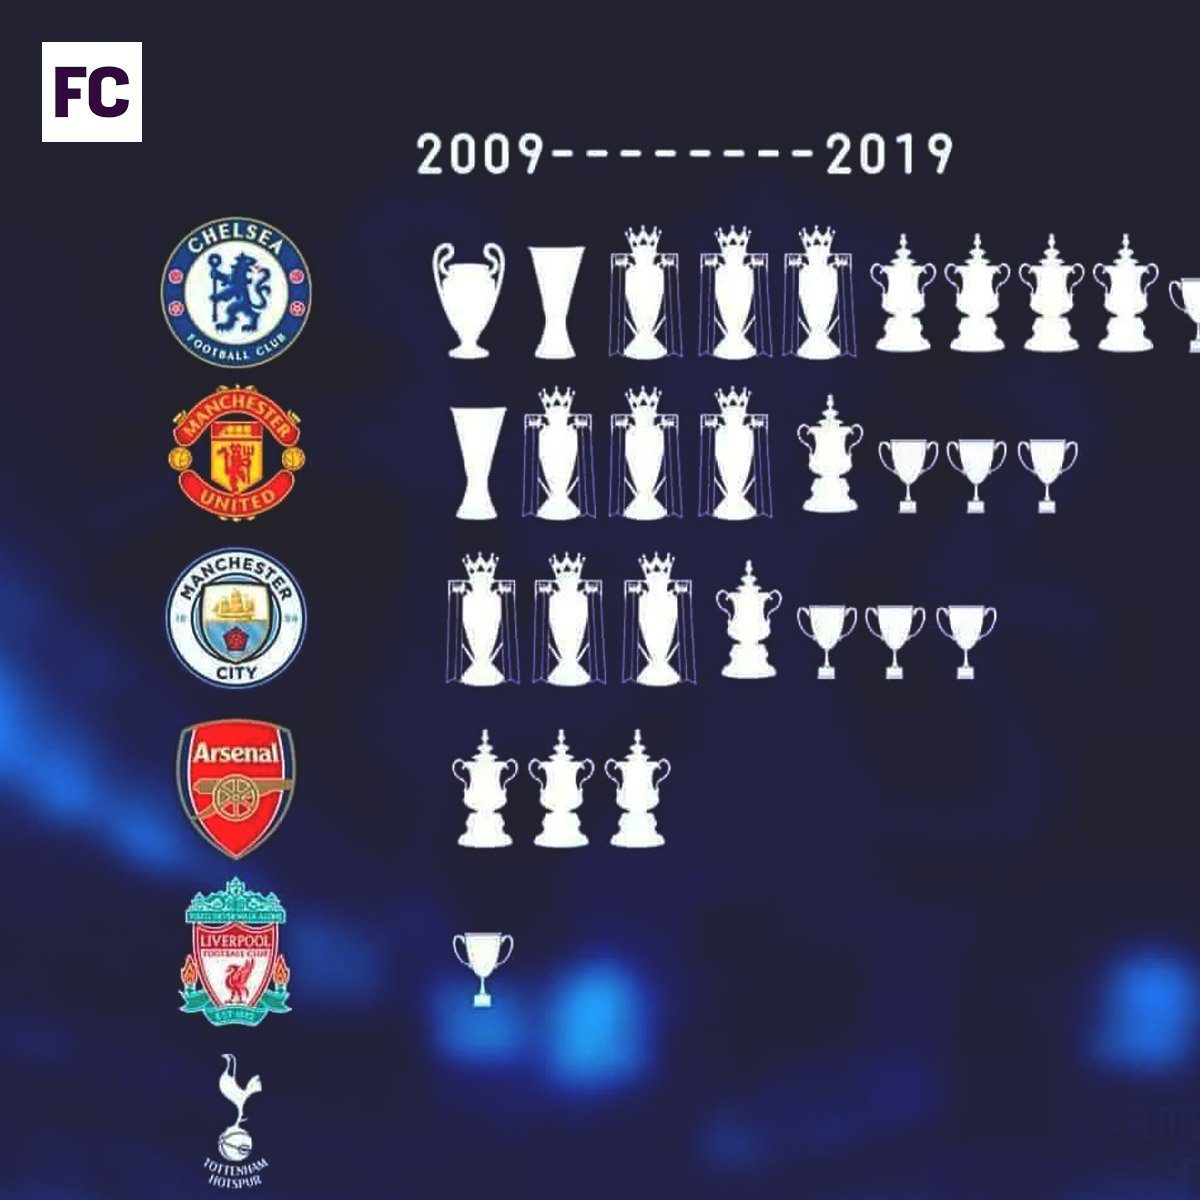 ¿Cuántas copas tiene Chelsea en total